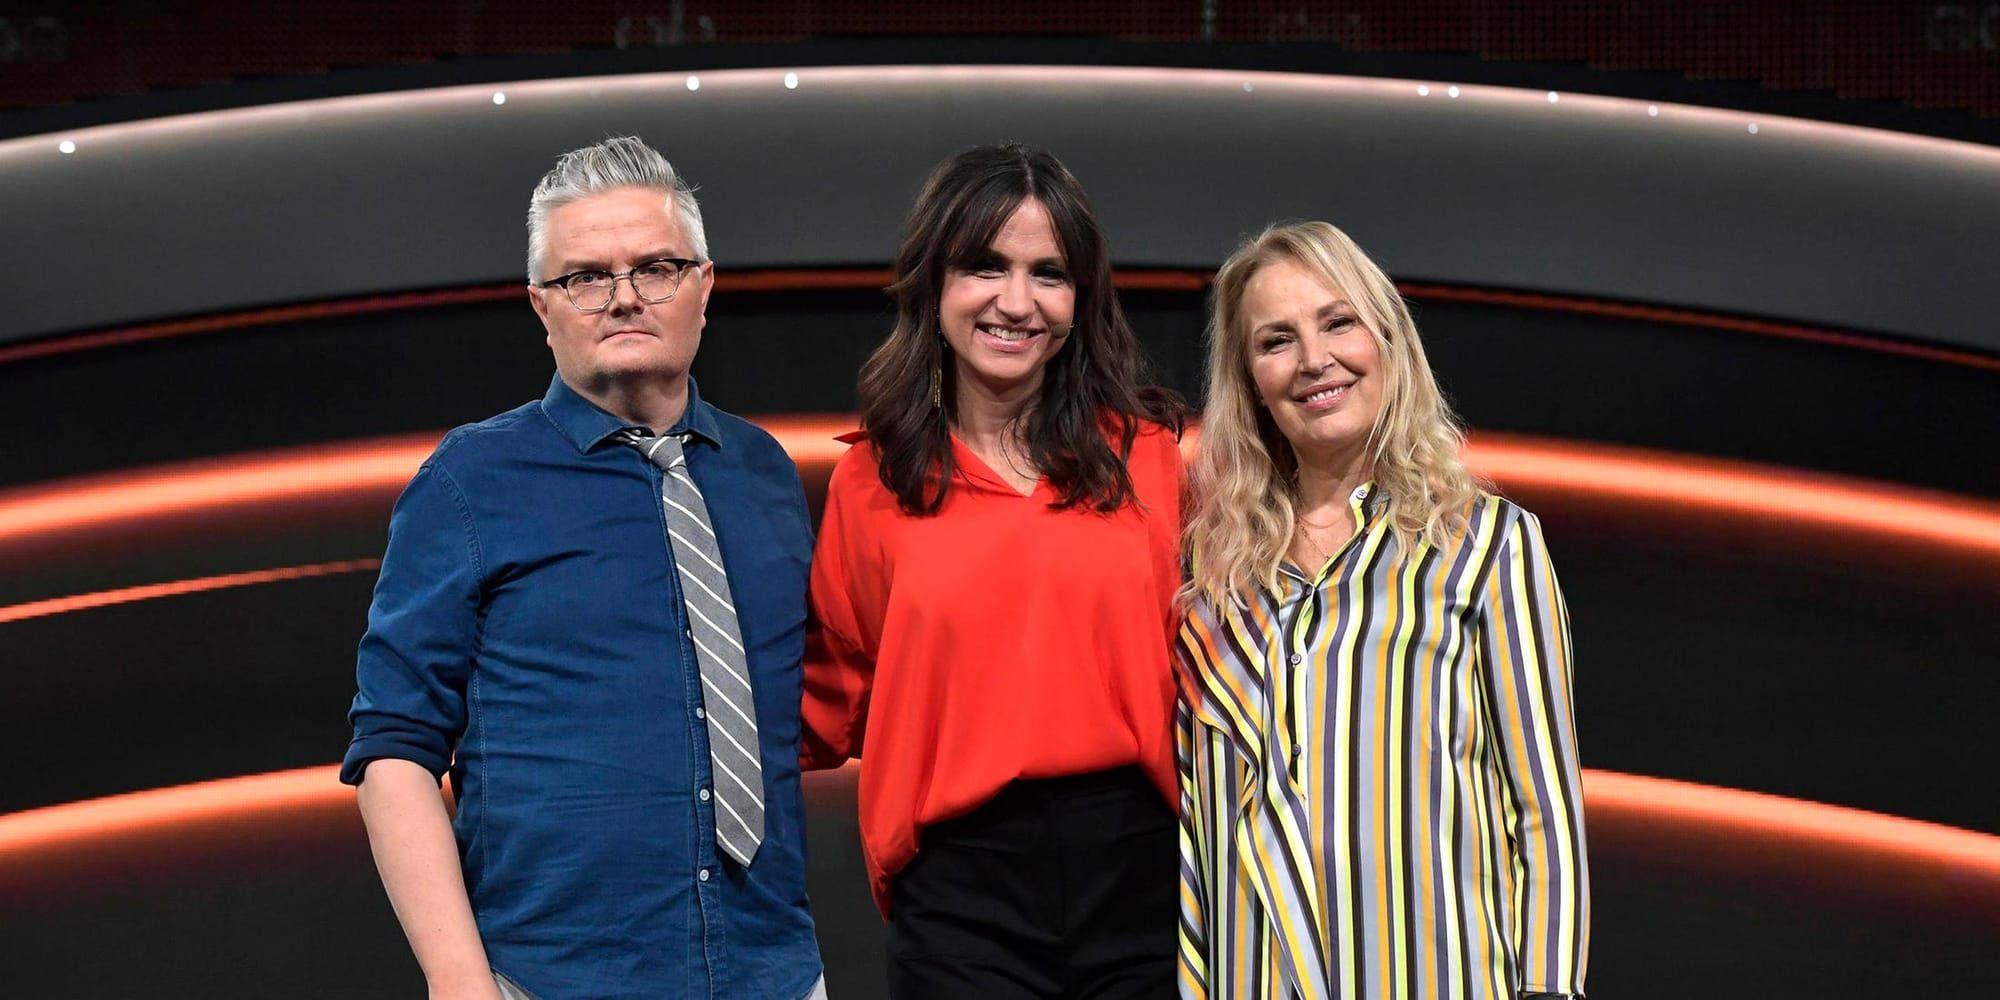 Jan Gradvall och Zannah Hultén har utgjort expertpanelen i TV4:s Stjärnornas stjärna, som leds av Petra Mede. 